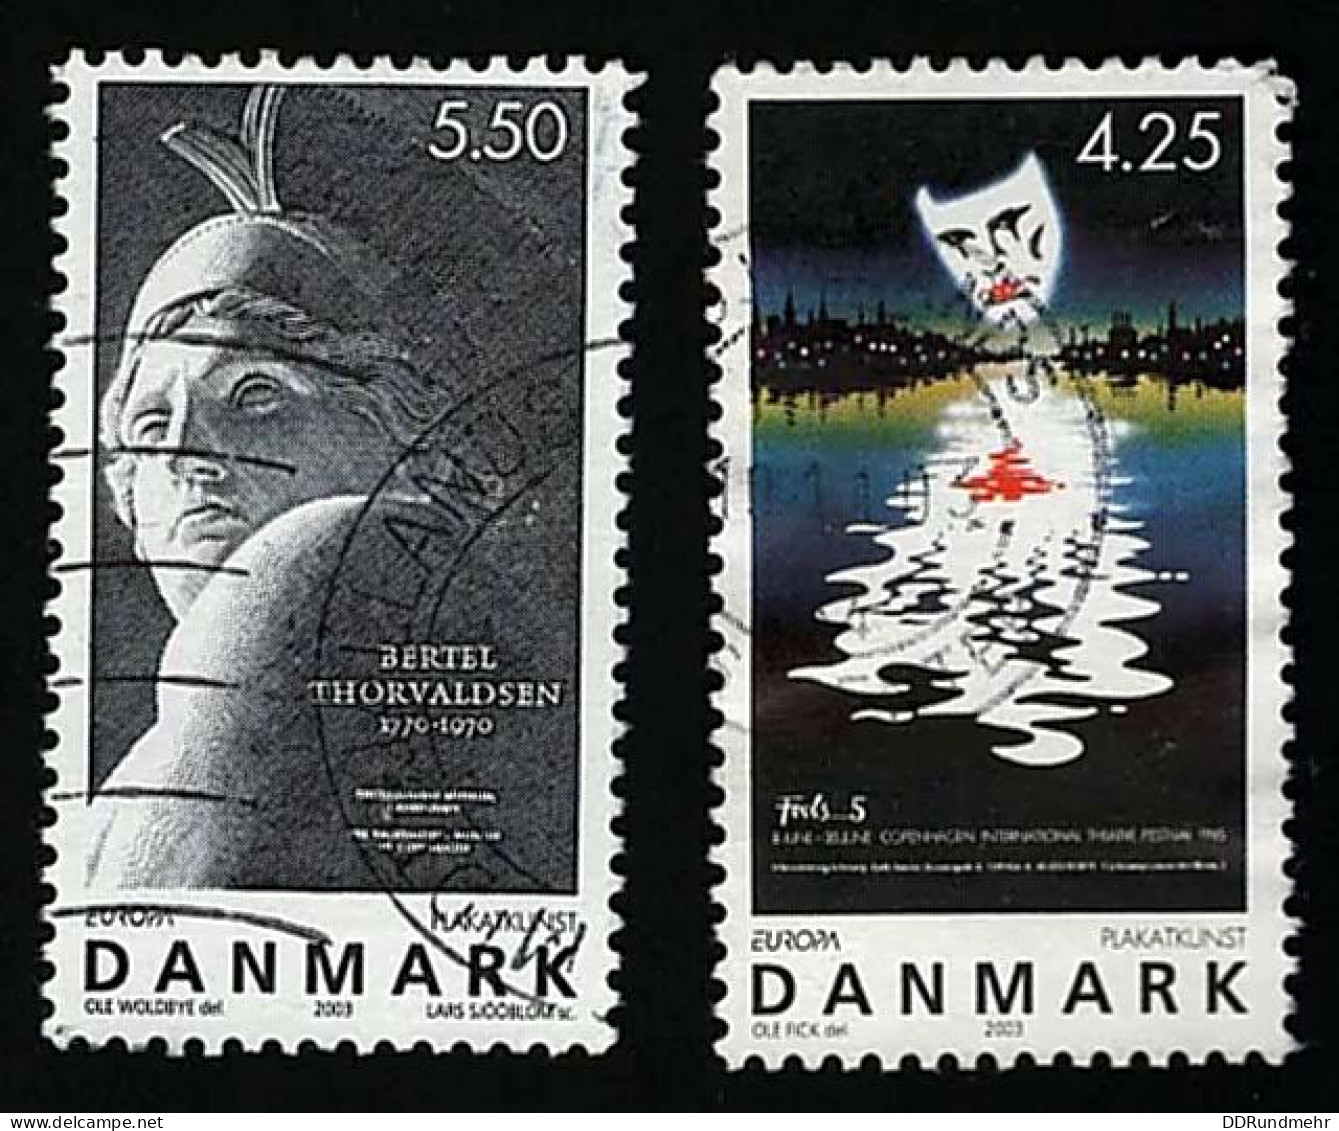 2003 Europa Michel DK 1341- 1342 Stamp Number DK 1250 - 1251 Yvert Et Tellier DK 1344 - 1345 Used - Usado